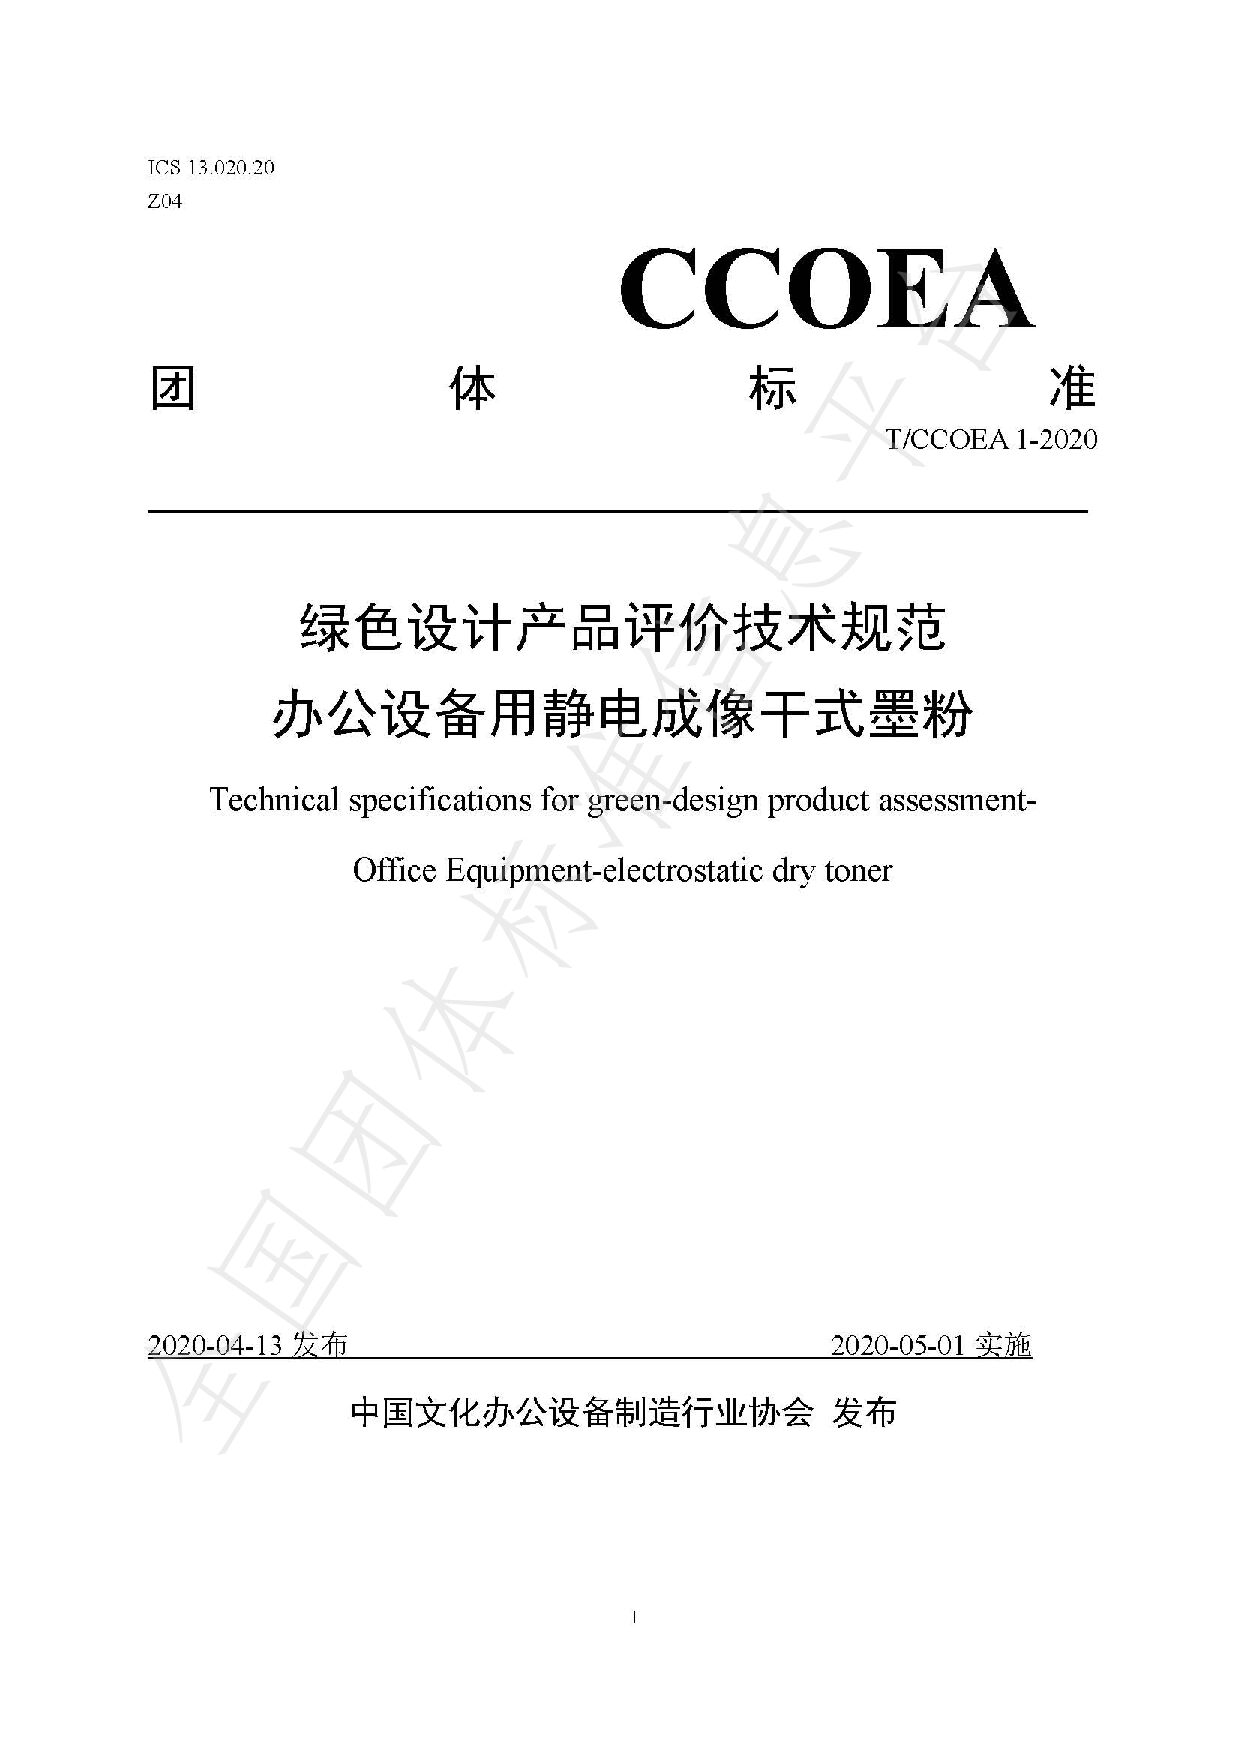 T/CCOEA 1-2020